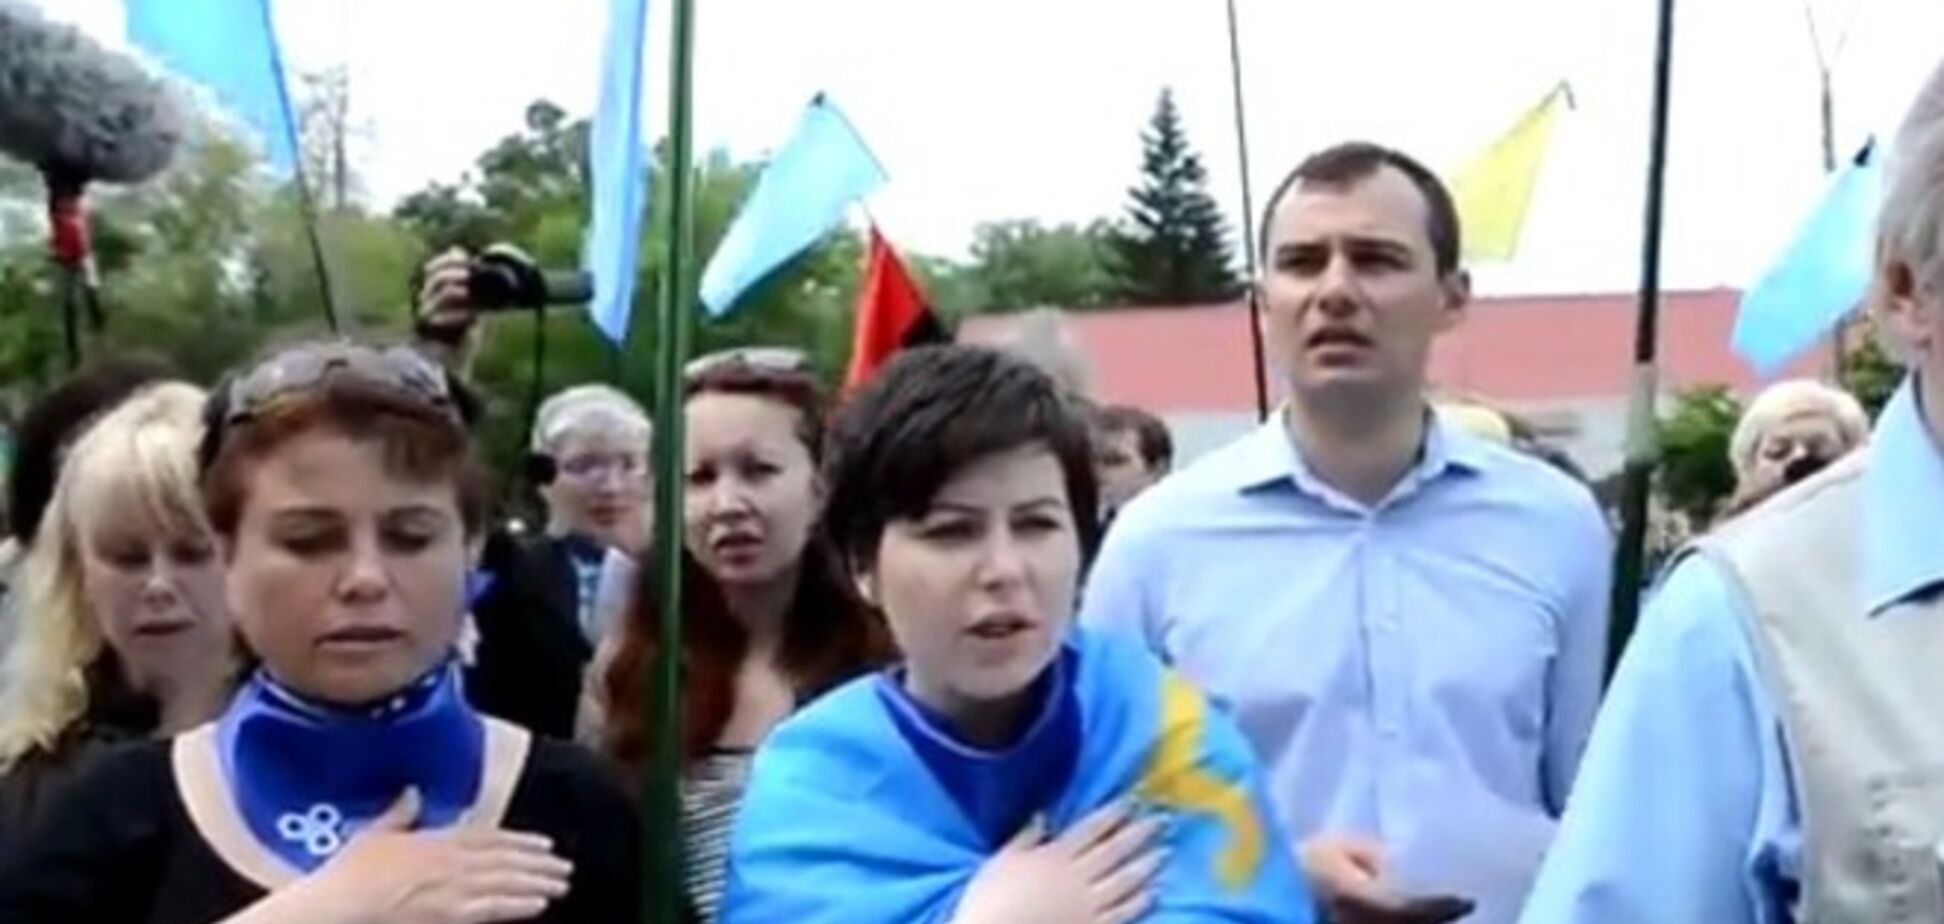 Гимн крымскотатарского народа исполнили на украинском языке